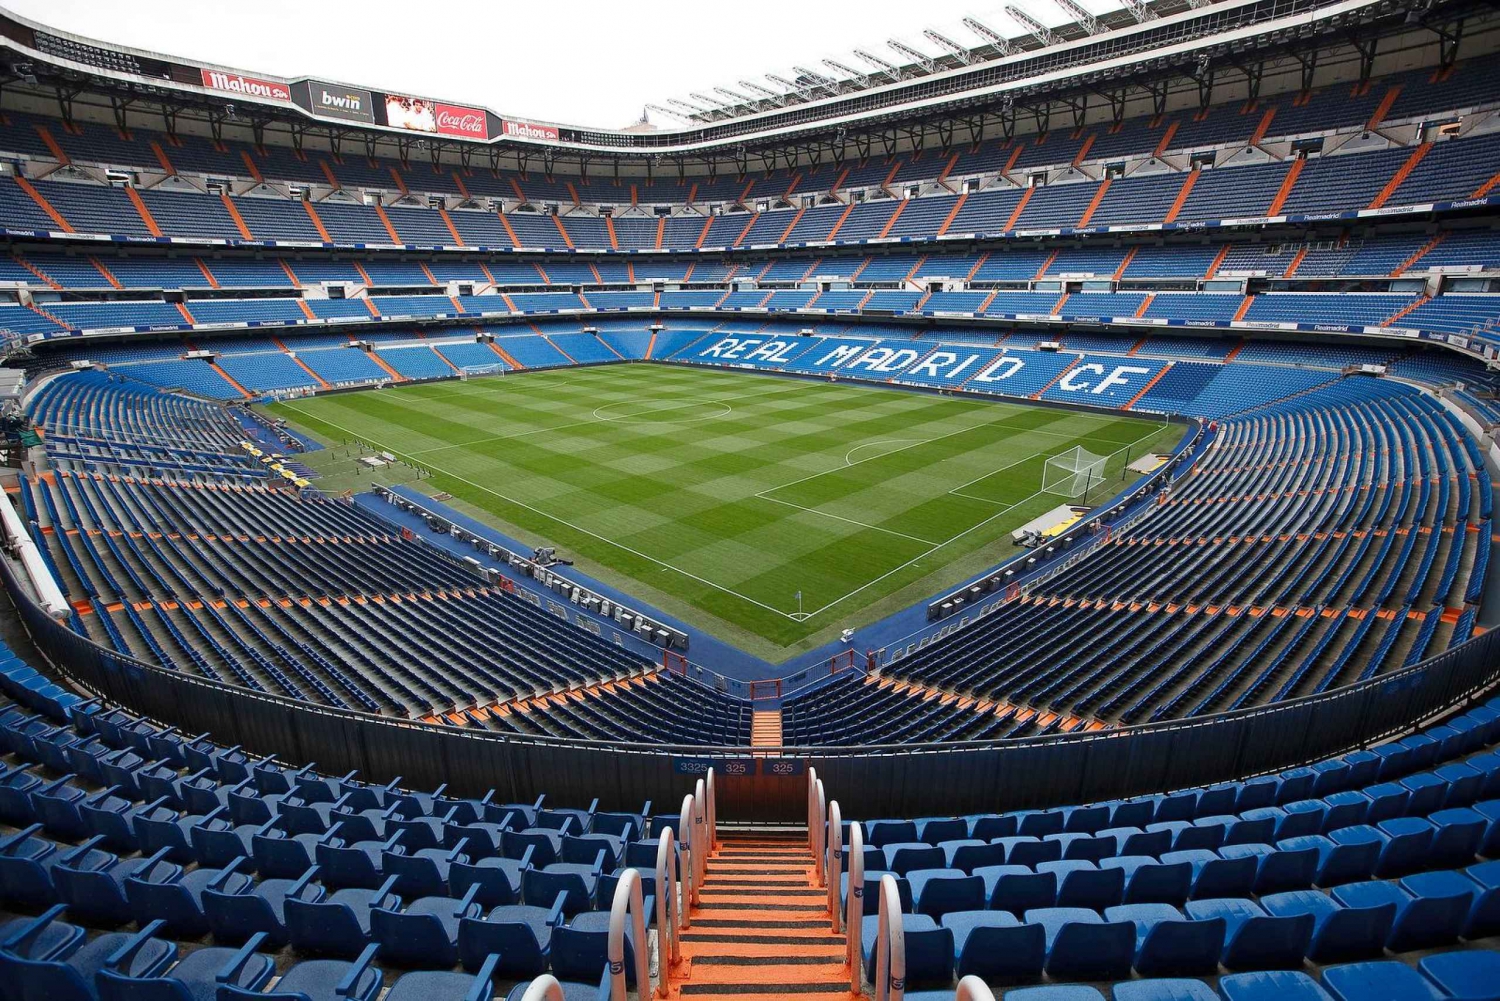 Madri: Tour Guiado no Estádio Santiago Bernabéu